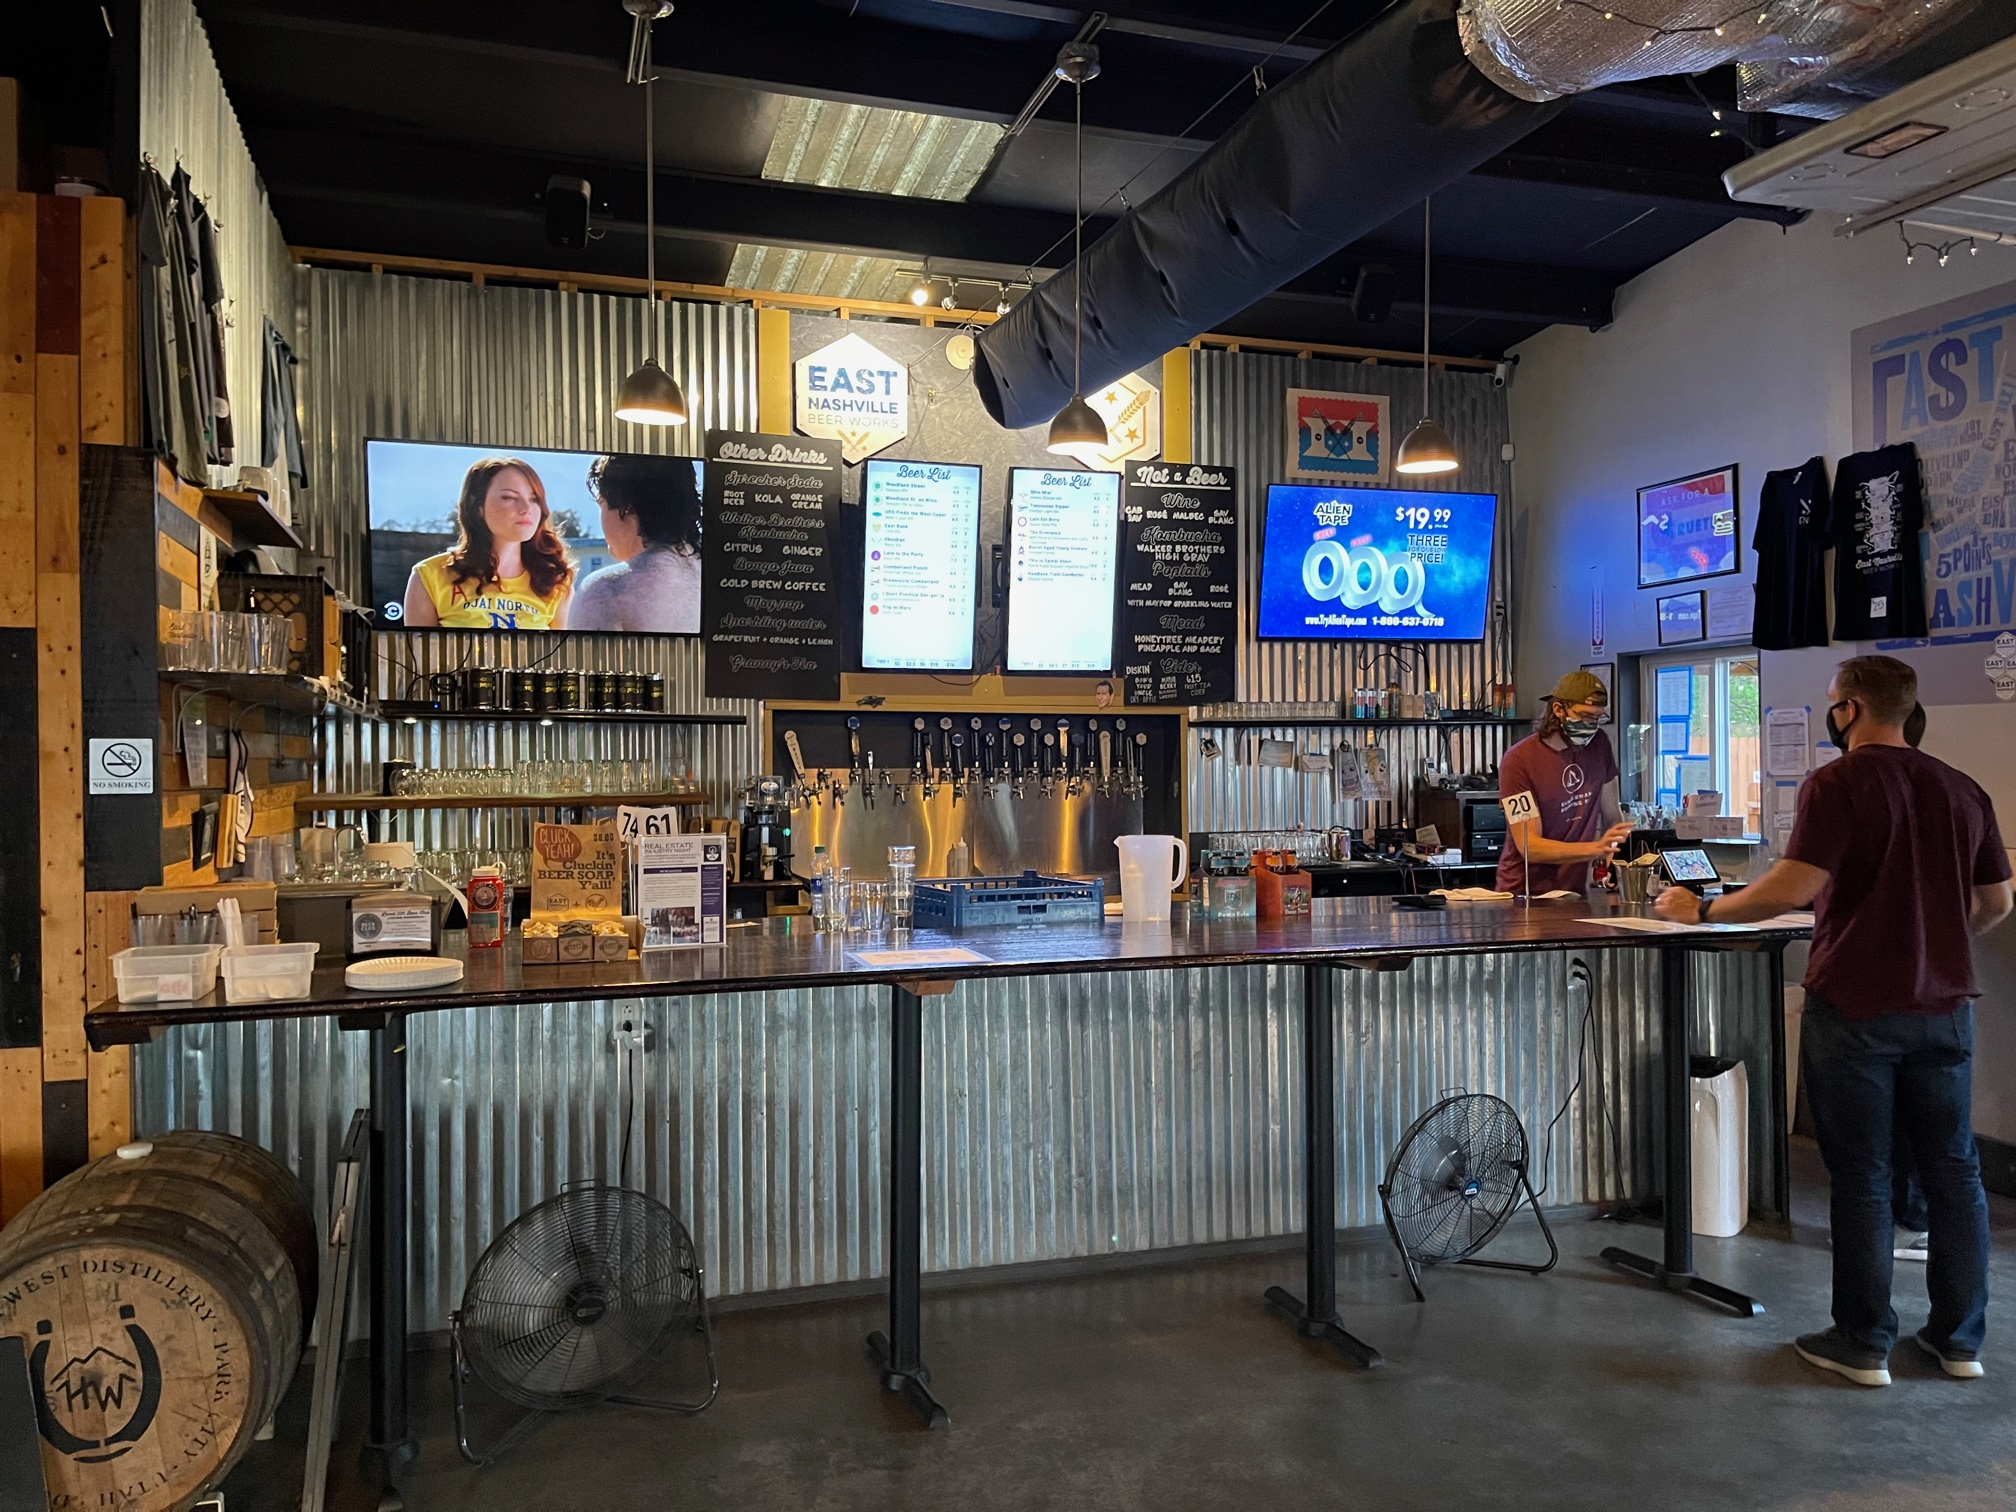 East Nashville Beer Works order food and drinks